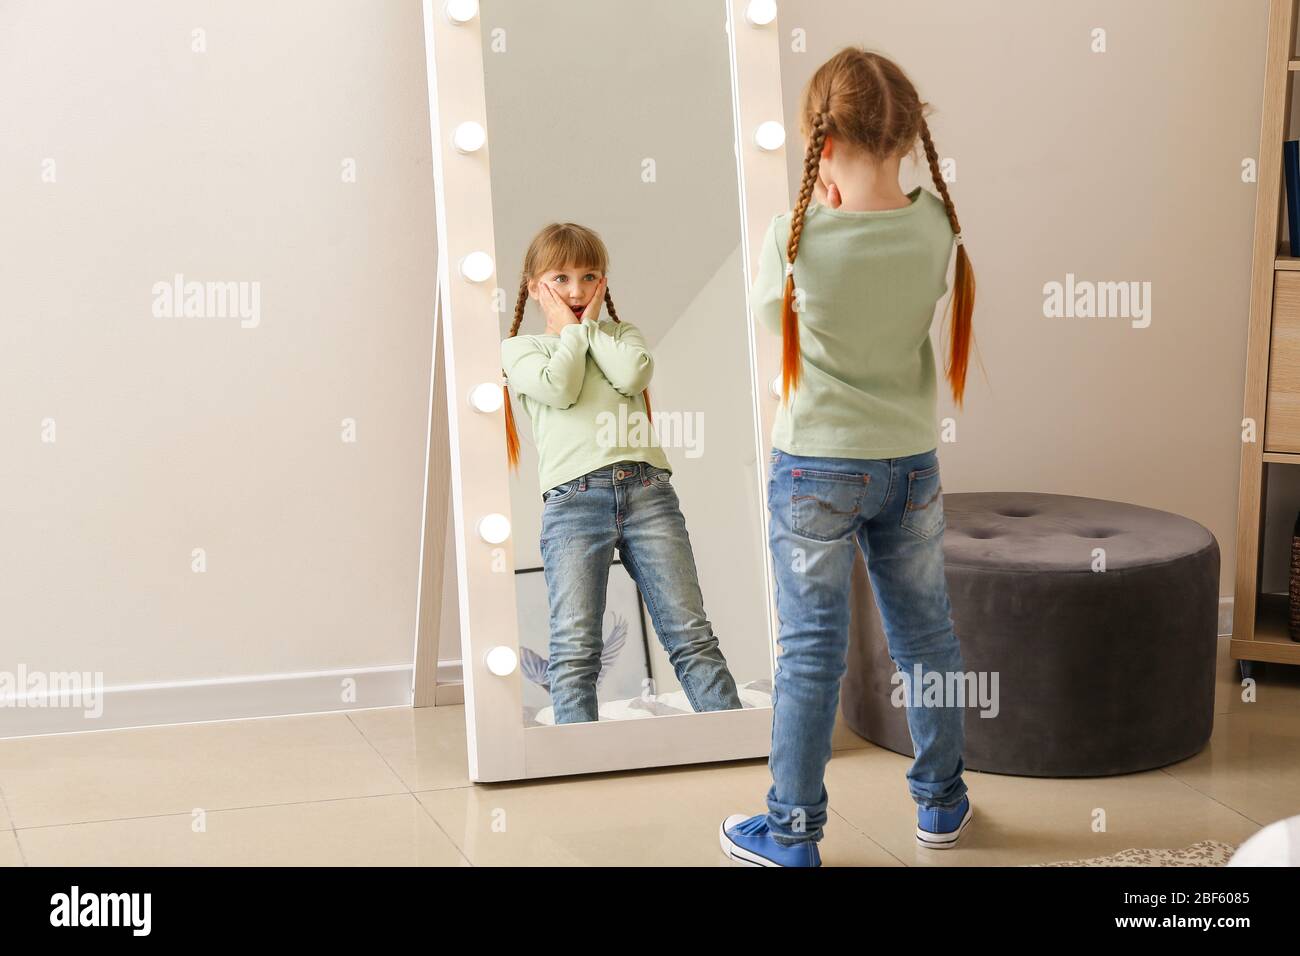 Une petite fille surprise regardant dans le miroir à la maison Photo Stock  - Alamy